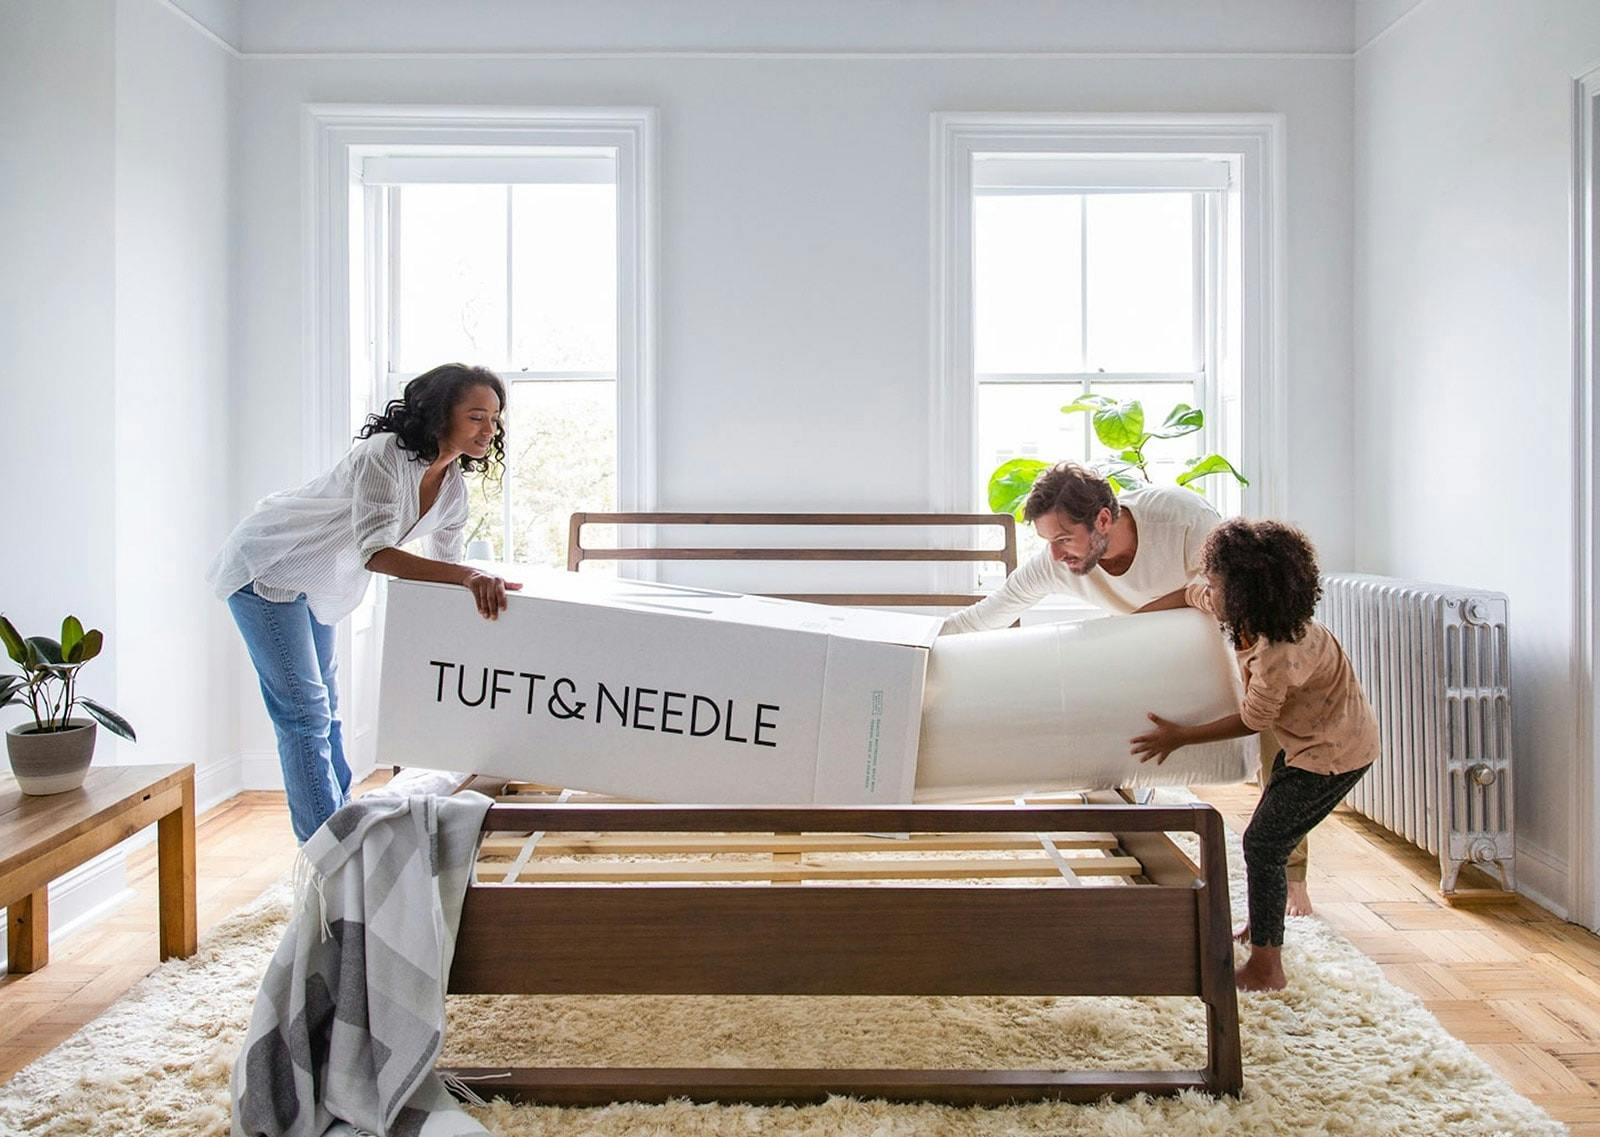 Turt & Needle logo